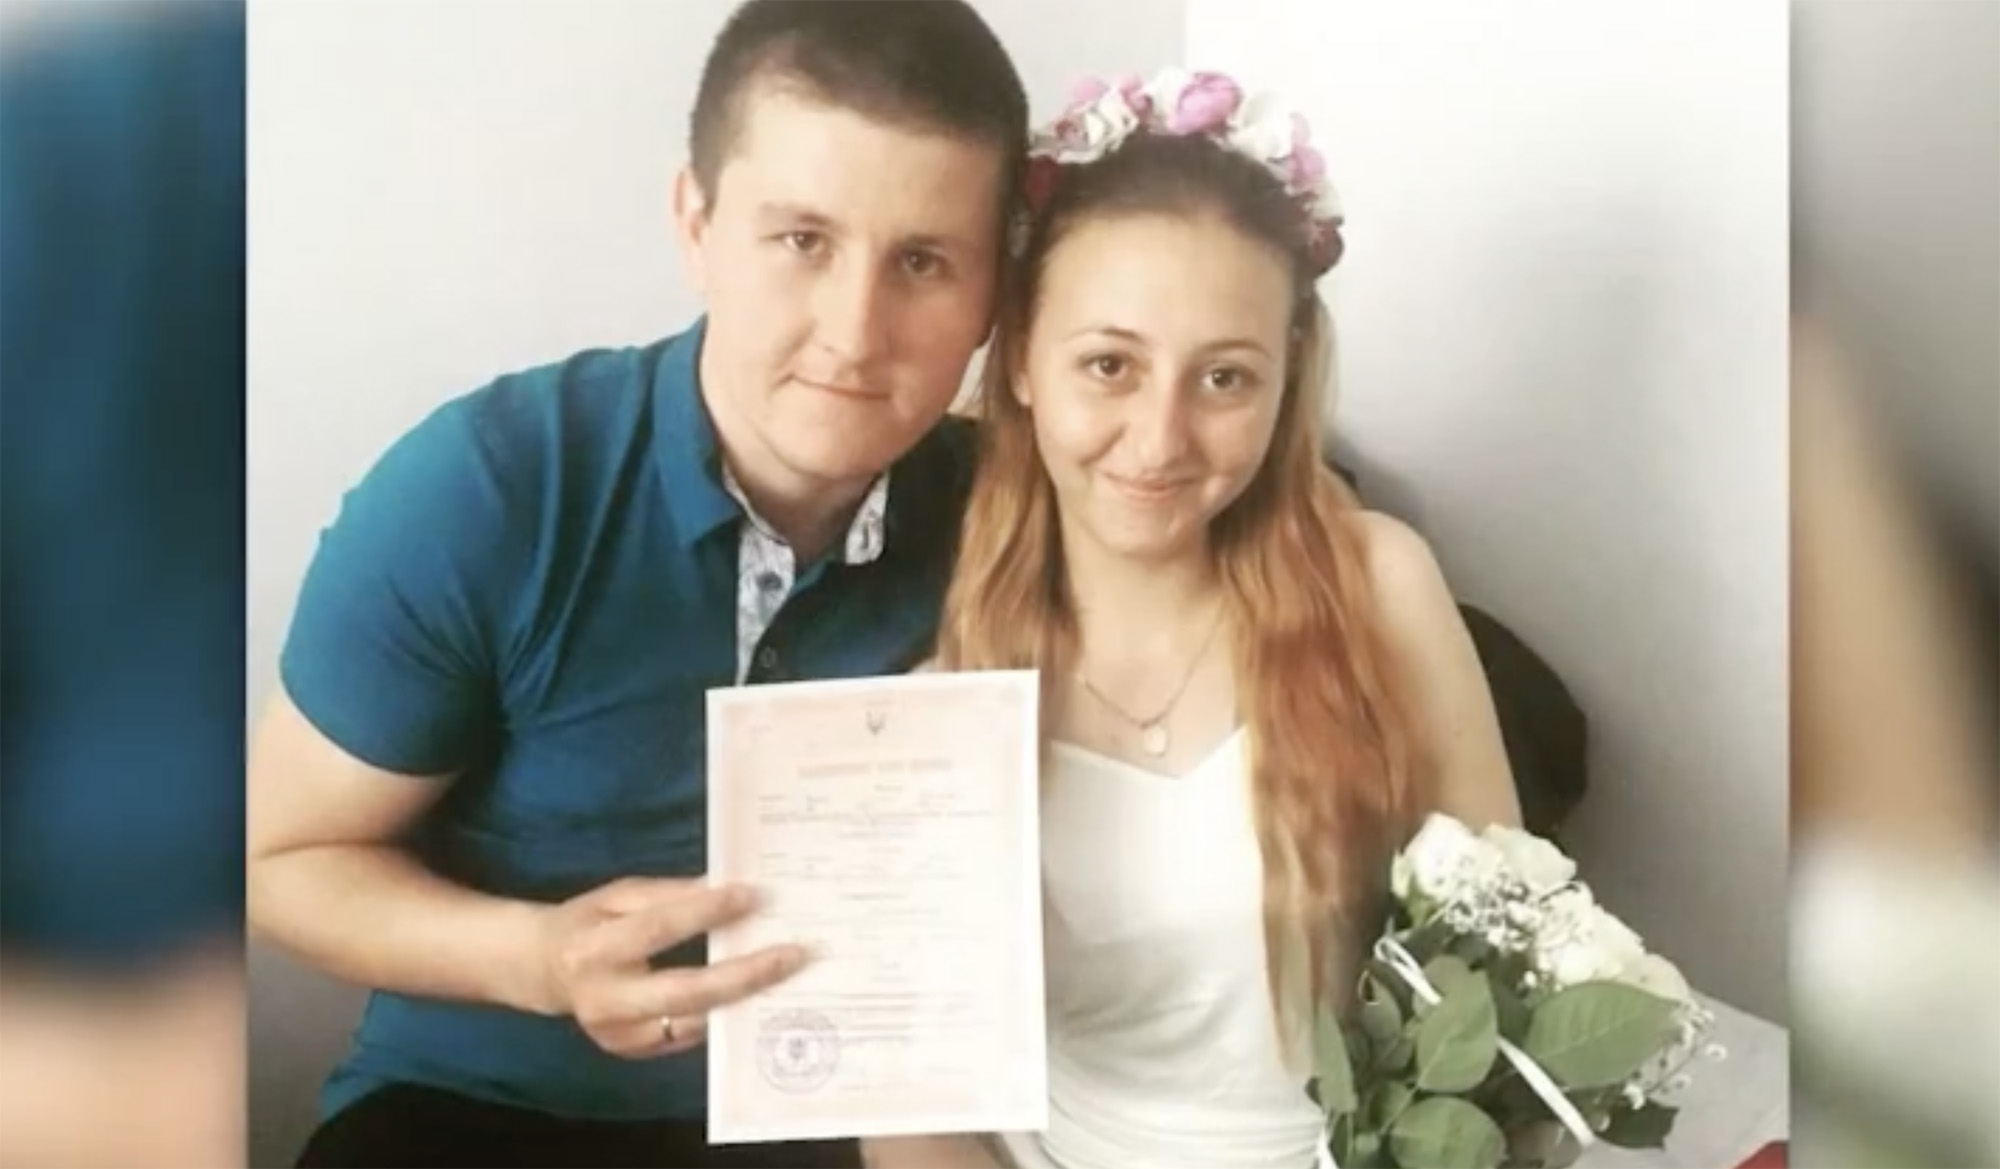 Viktor and Oksana Balandina pose on their wedding day.